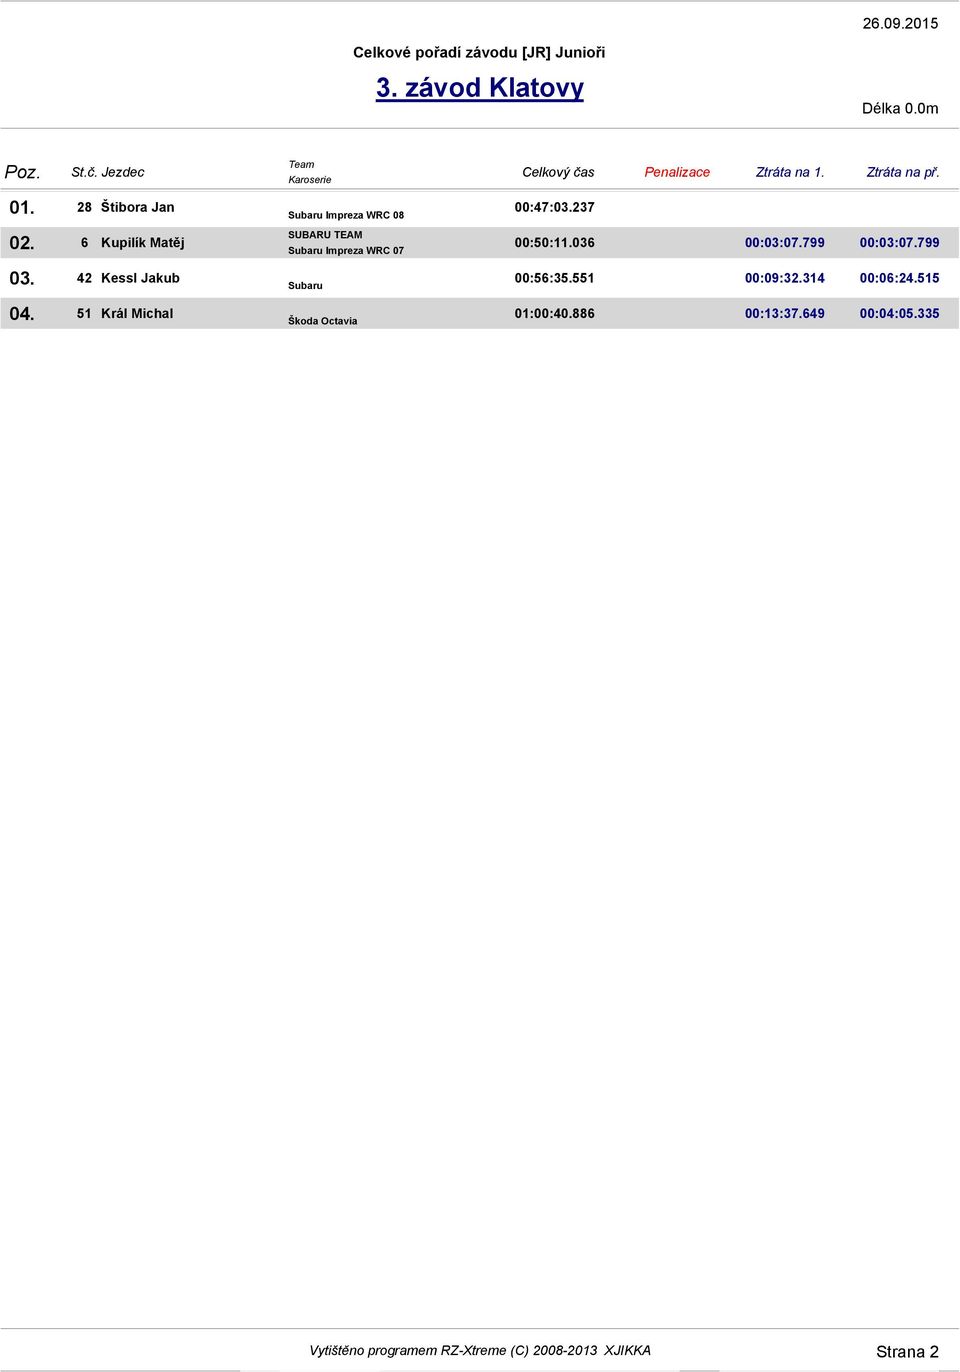 Impreza WRC 07 Subaru Škoda Octavia Celkový čas Ztráta na 1. Ztráta na př. 00:47:03.237 00:50:11.